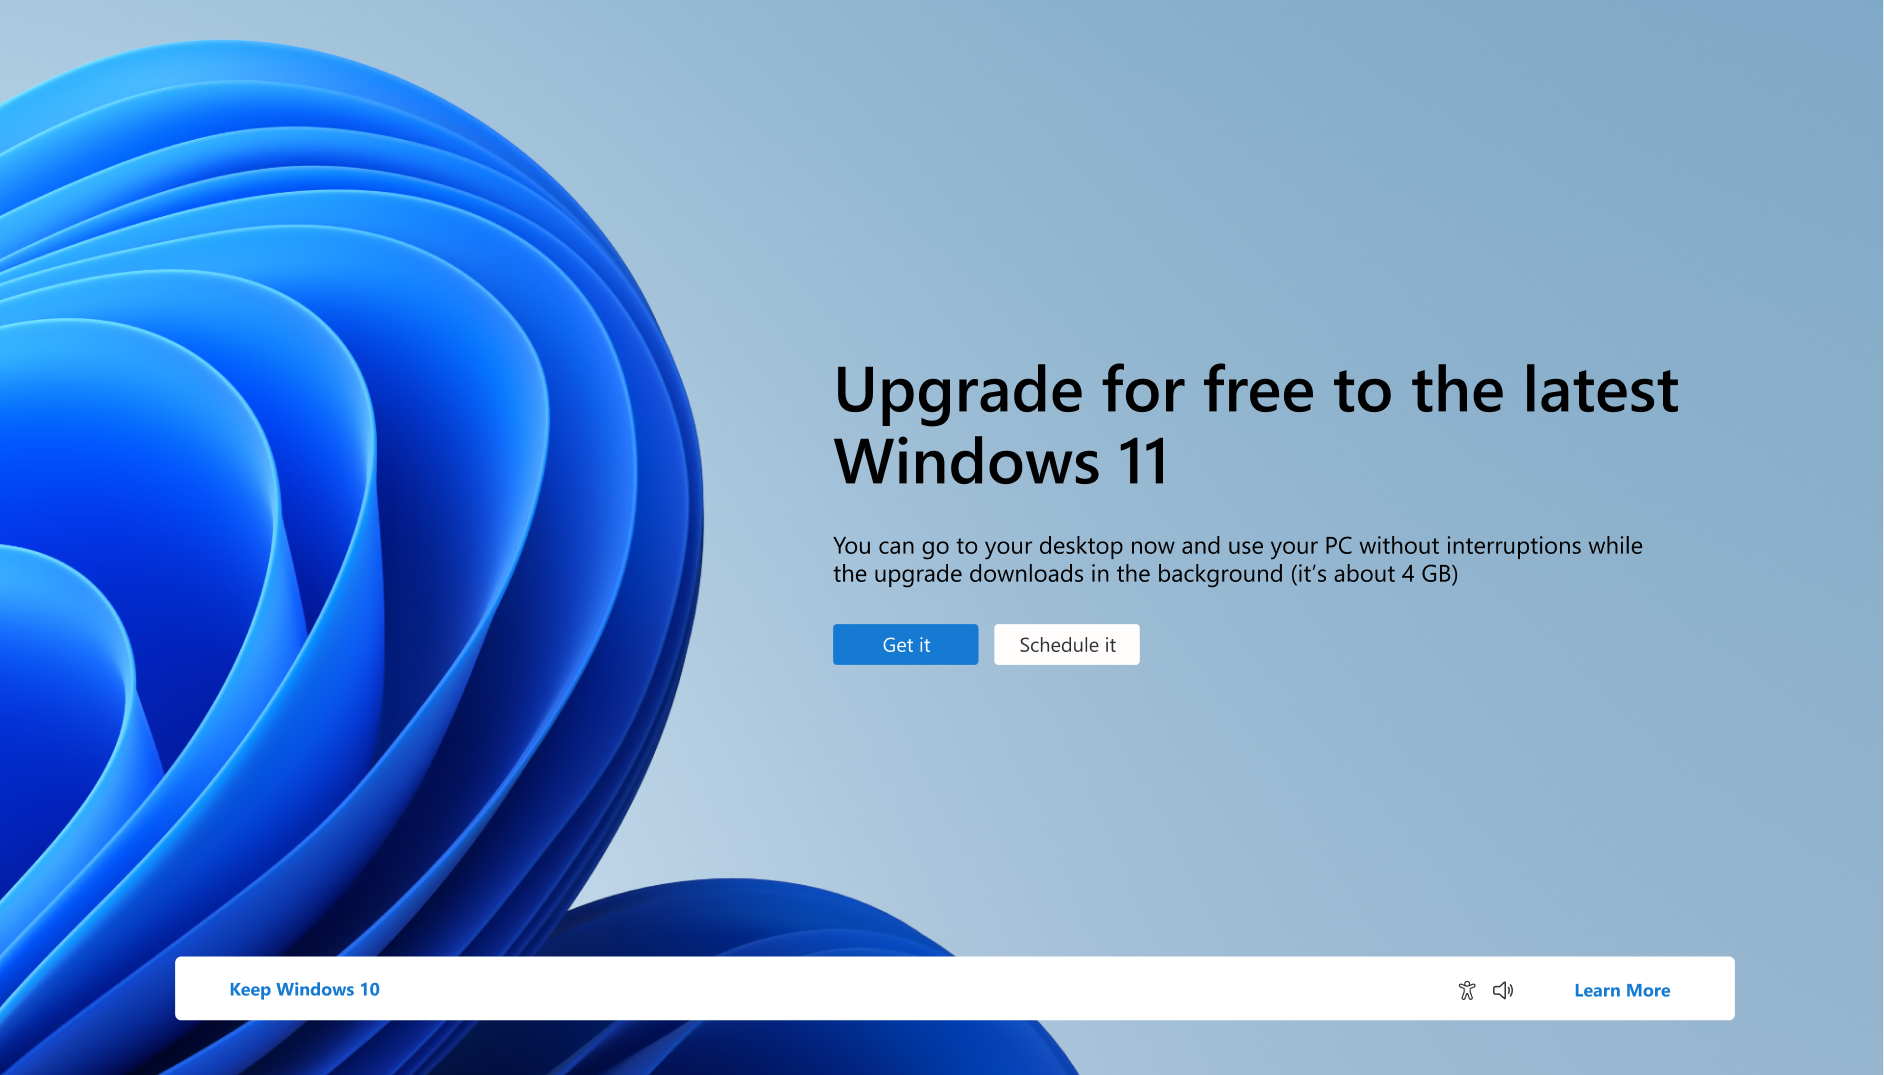 สกรีนช็อตของการแจ้งเตือนที่ระบุว่าพีซีสามารถอัปเกรดเป็น Windows 11 ได้ฟรี